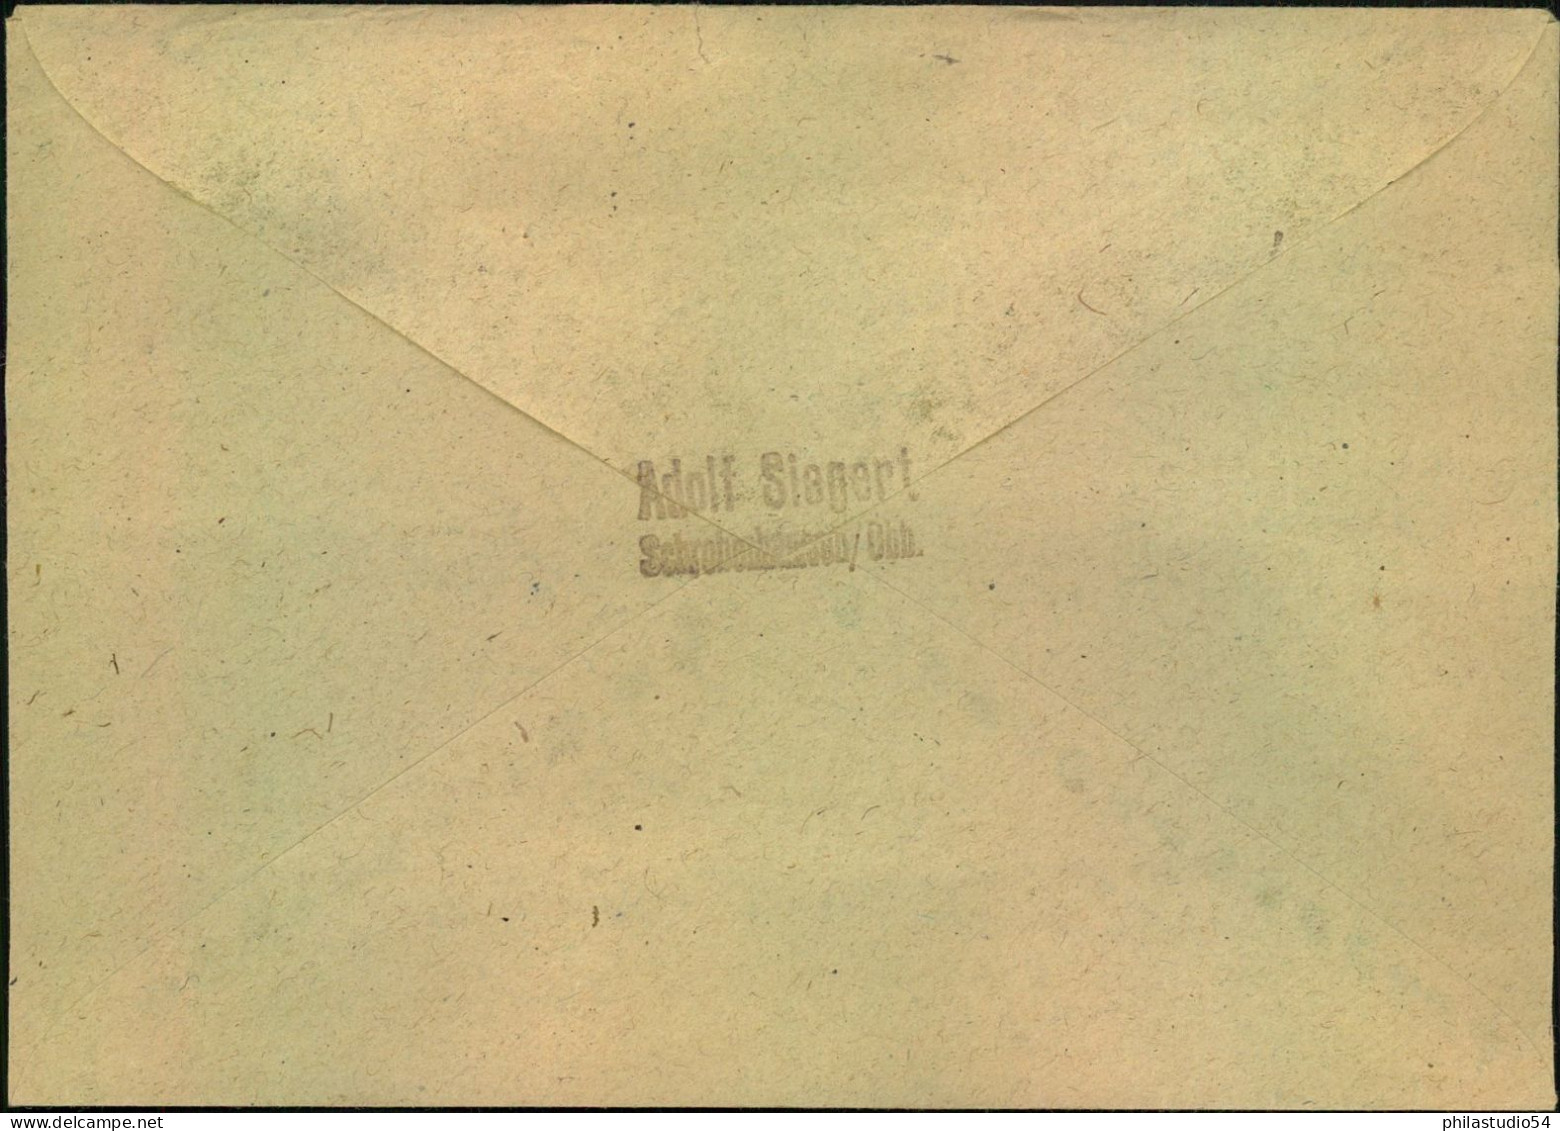 1950, 10 Und 20 Pf. Bachsiegel Portogerecht Als EF Auf Karte Bzw. Fernbrief - Covers & Documents